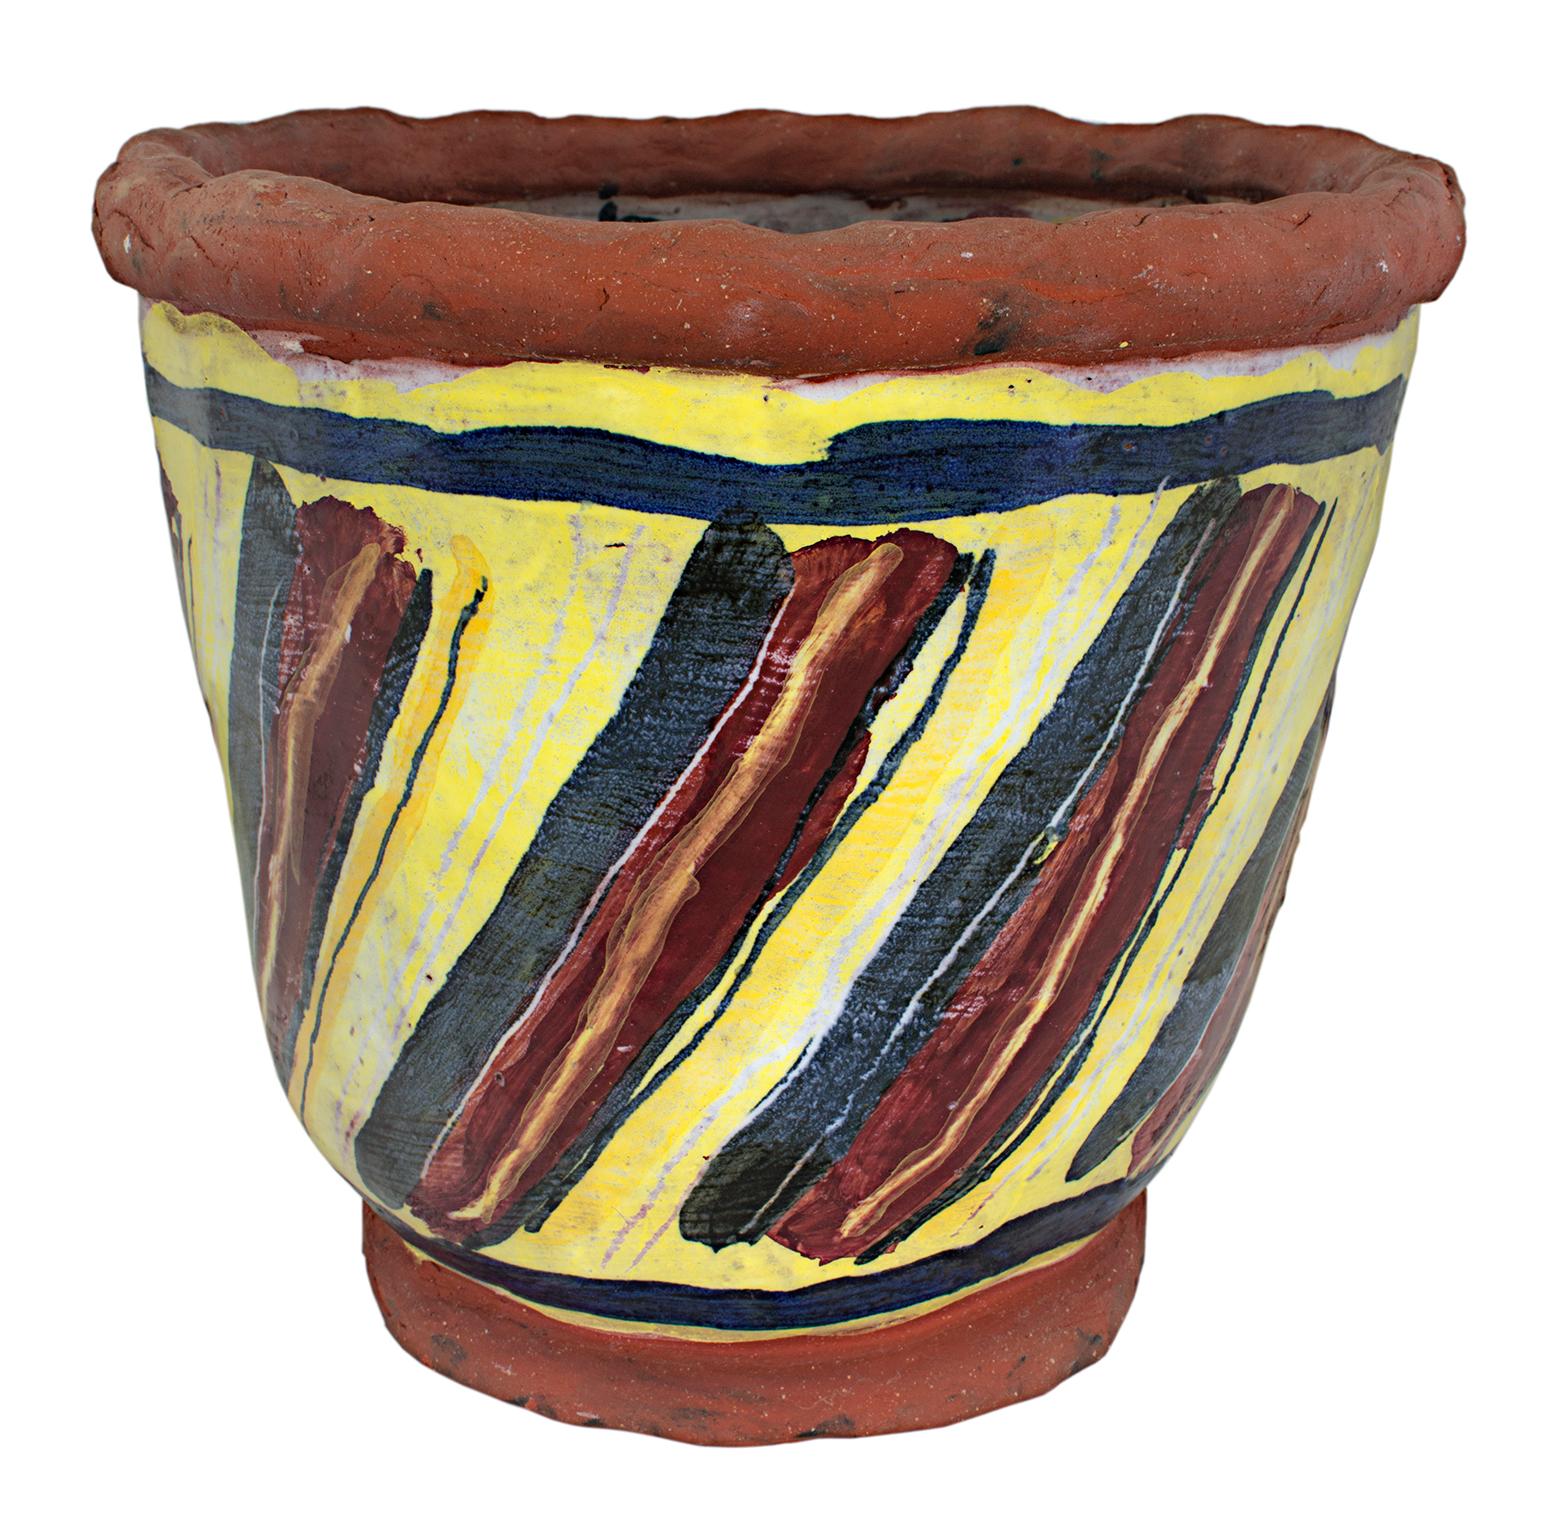 die "Basket Weave Bacon Bowl" ist eine Original-Keramik von Michael Gross. Der Künstler hat das Werk auf der Unterseite signiert und datiert. Es zeigt Bilder von Speck auf Gelb. 

8 1/2" x 9 1/2" x 6" Kunst

Die Keramikskulpturen des Künstlers